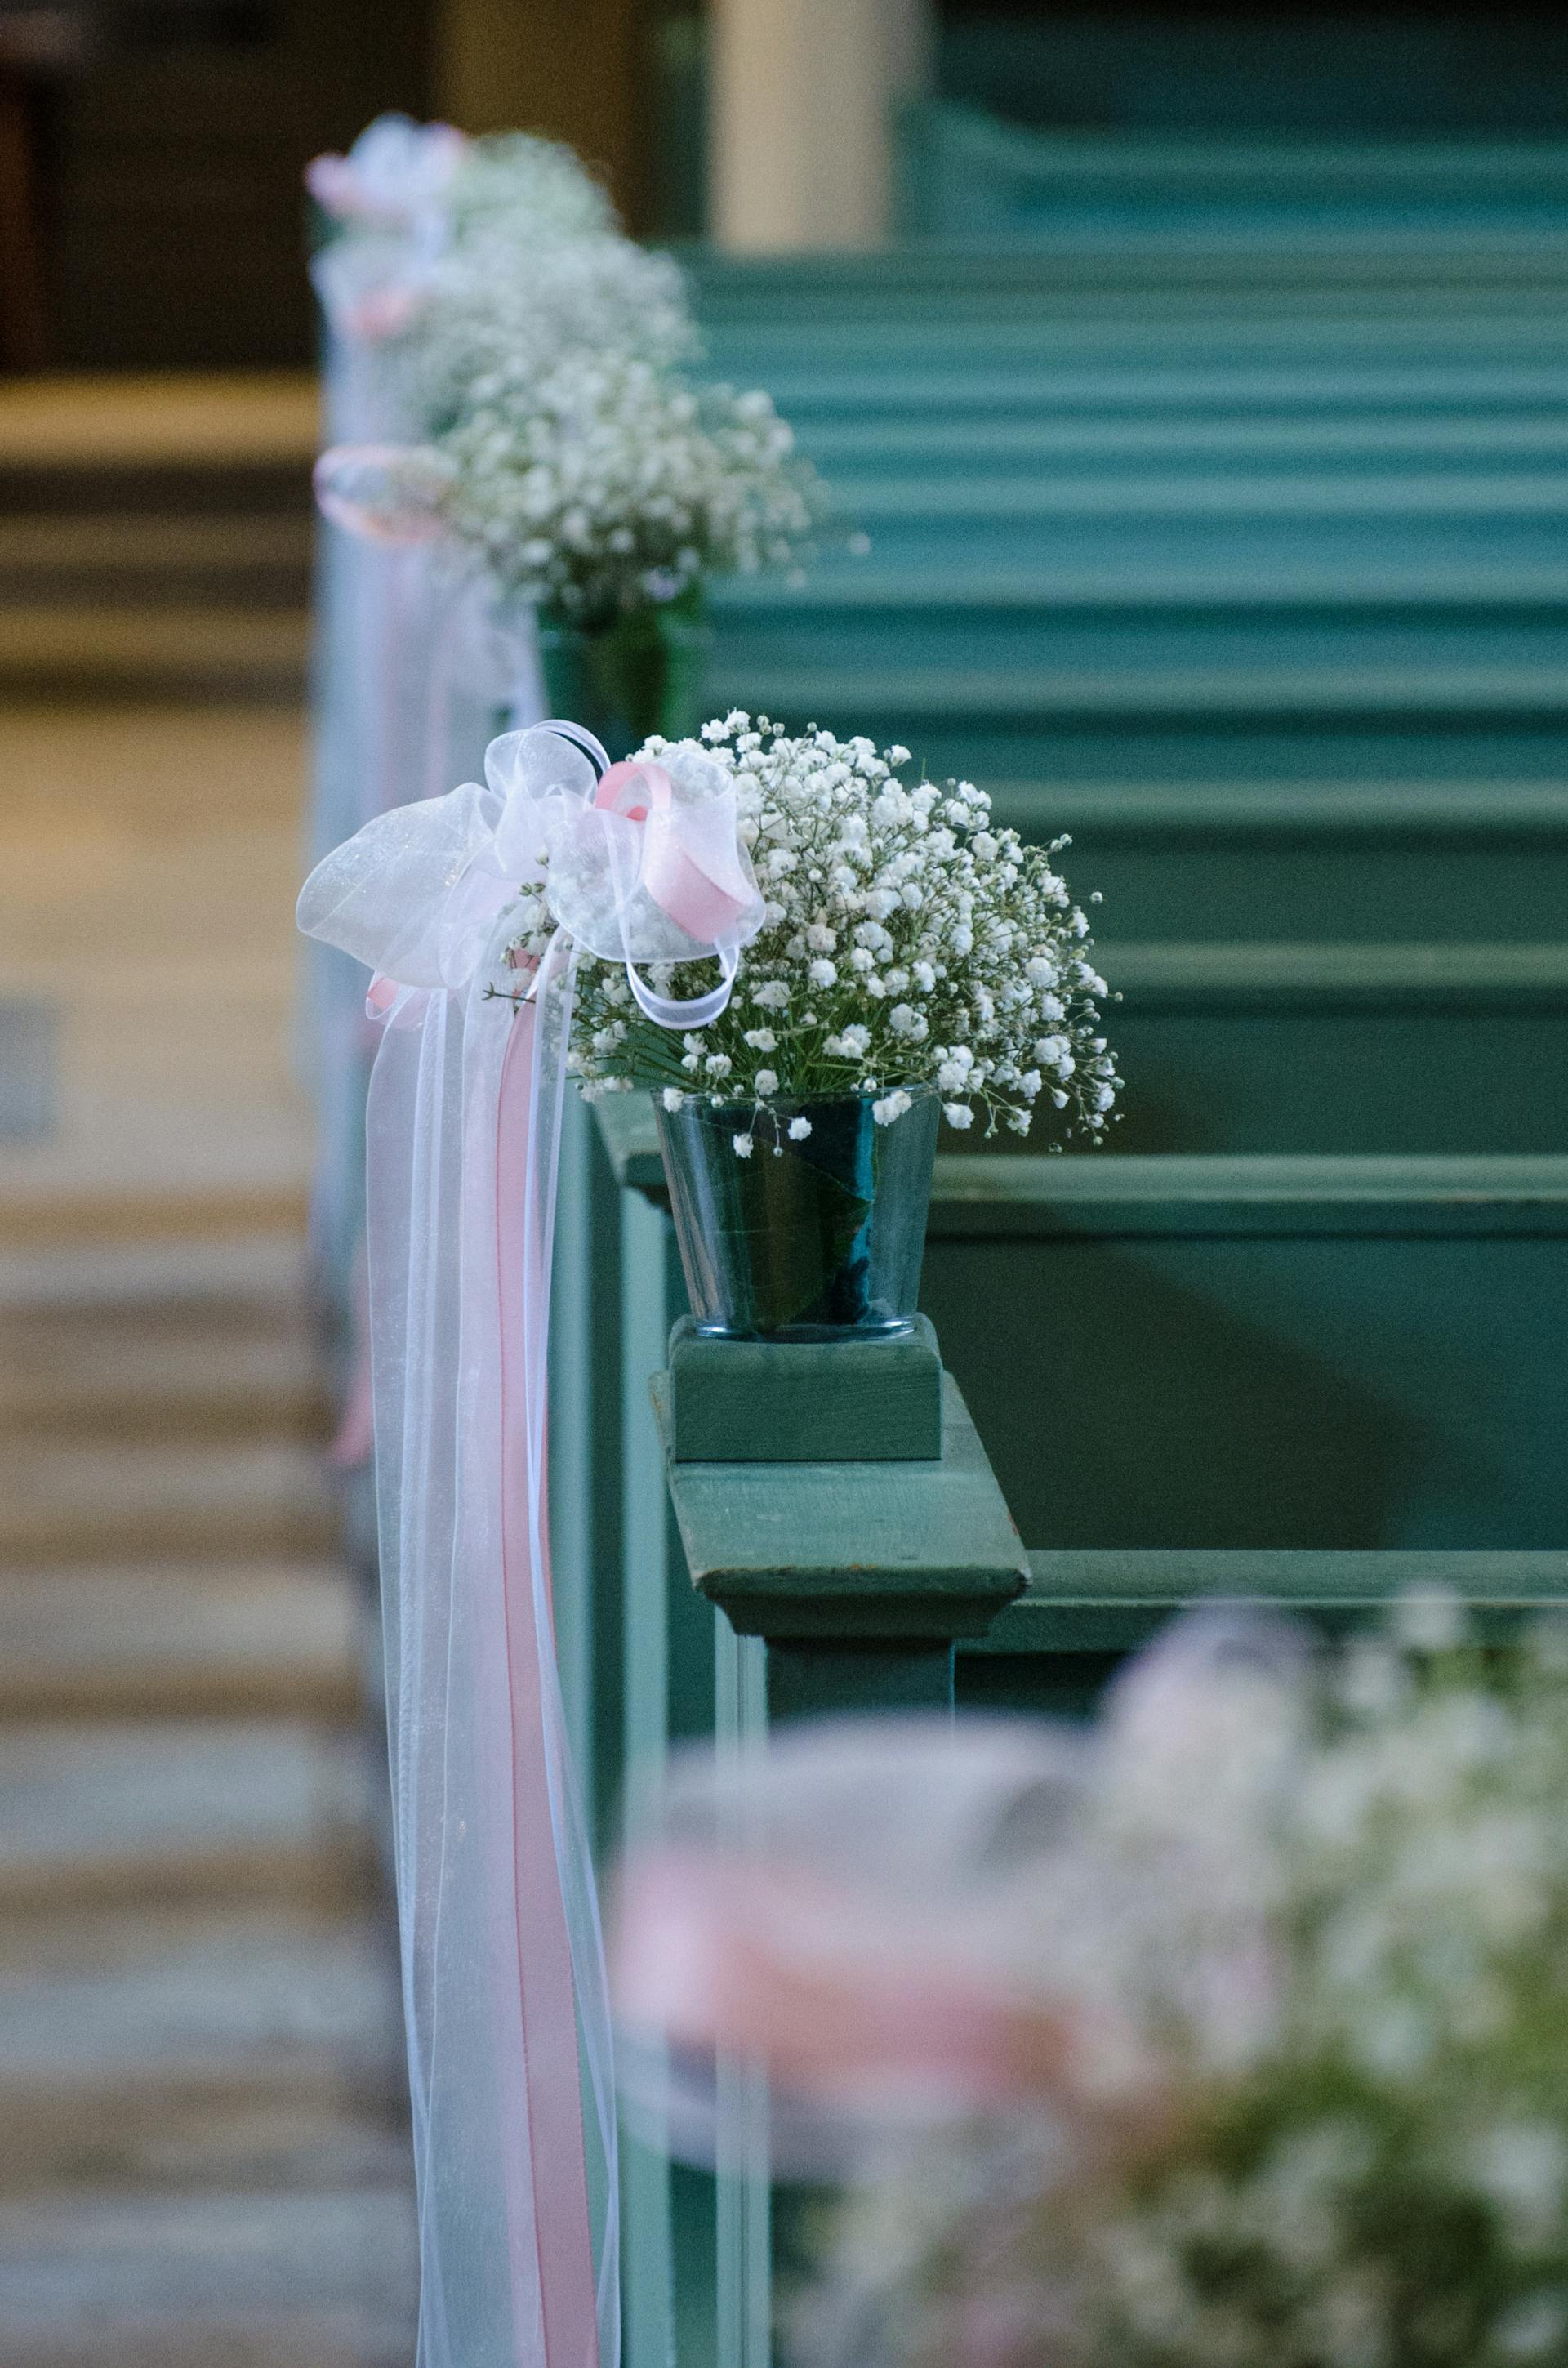 Fleurs et tulle le long des bancs d'église | Source : Pexels